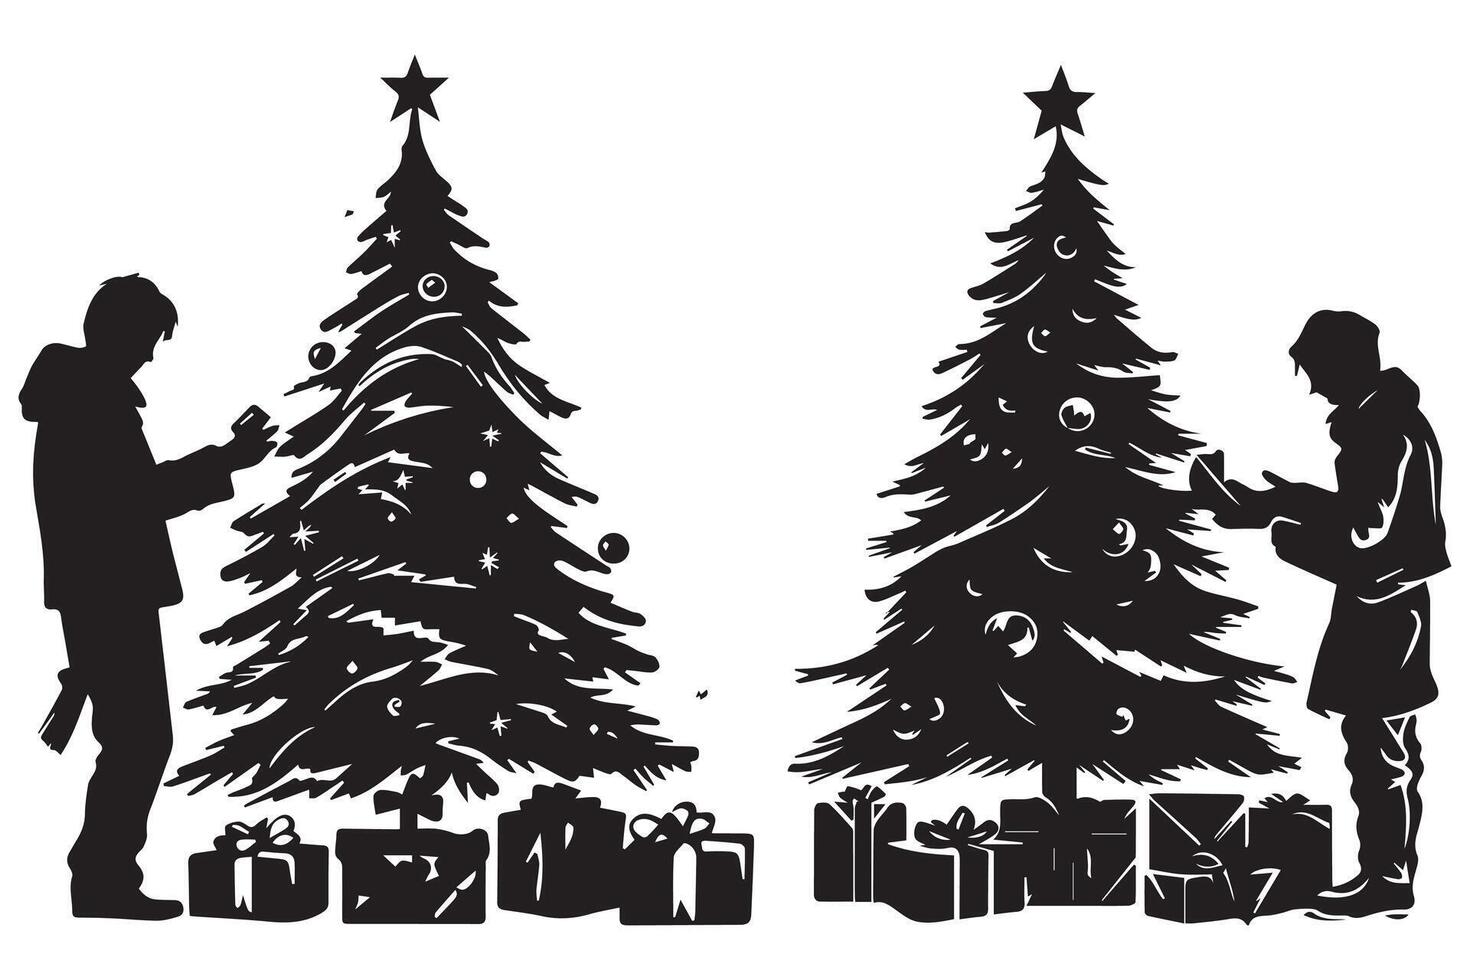 silueta hombre y regalo debajo Navidad árbol Pro diseño vector